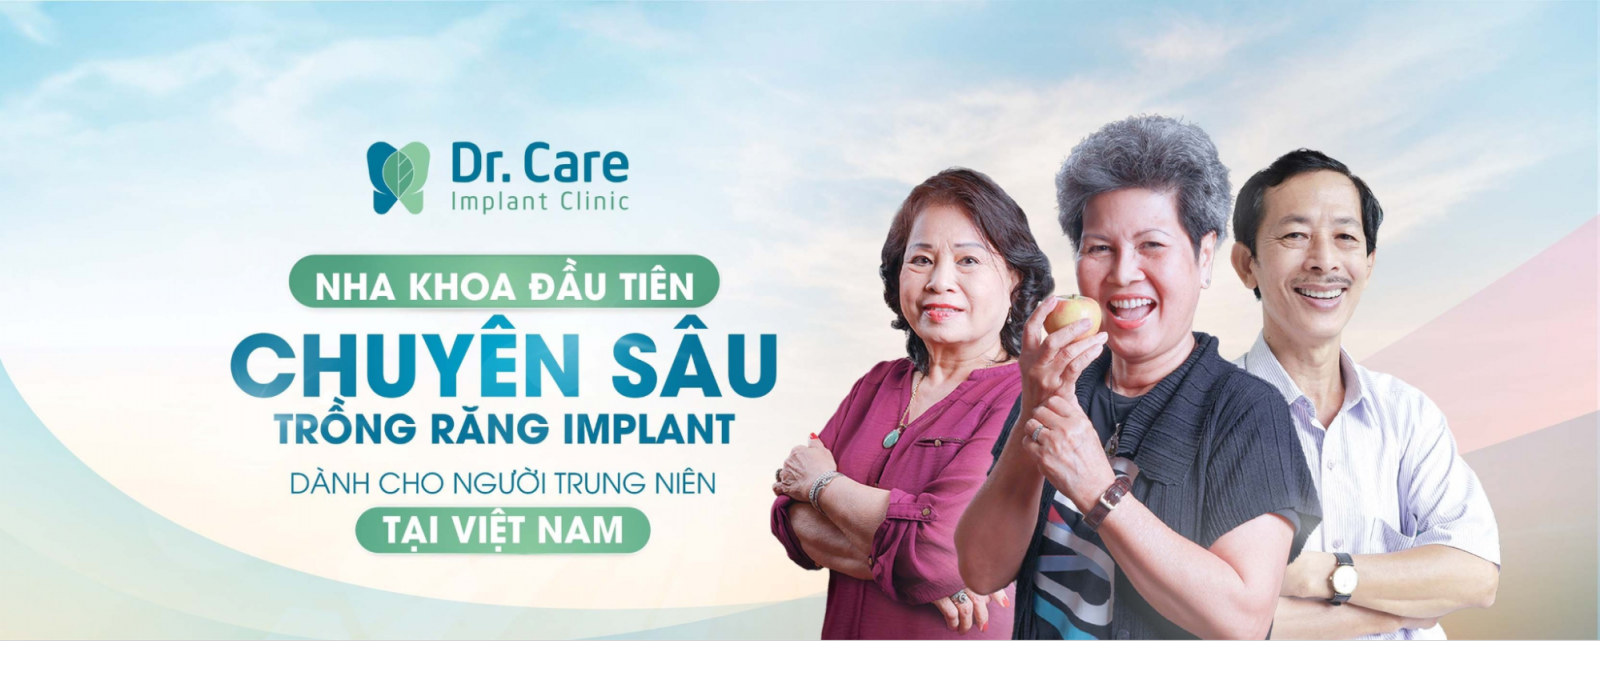 Dr. Care - Implant Clinic - Nha khoa chuyên sâu trồng răng Implant uy tín